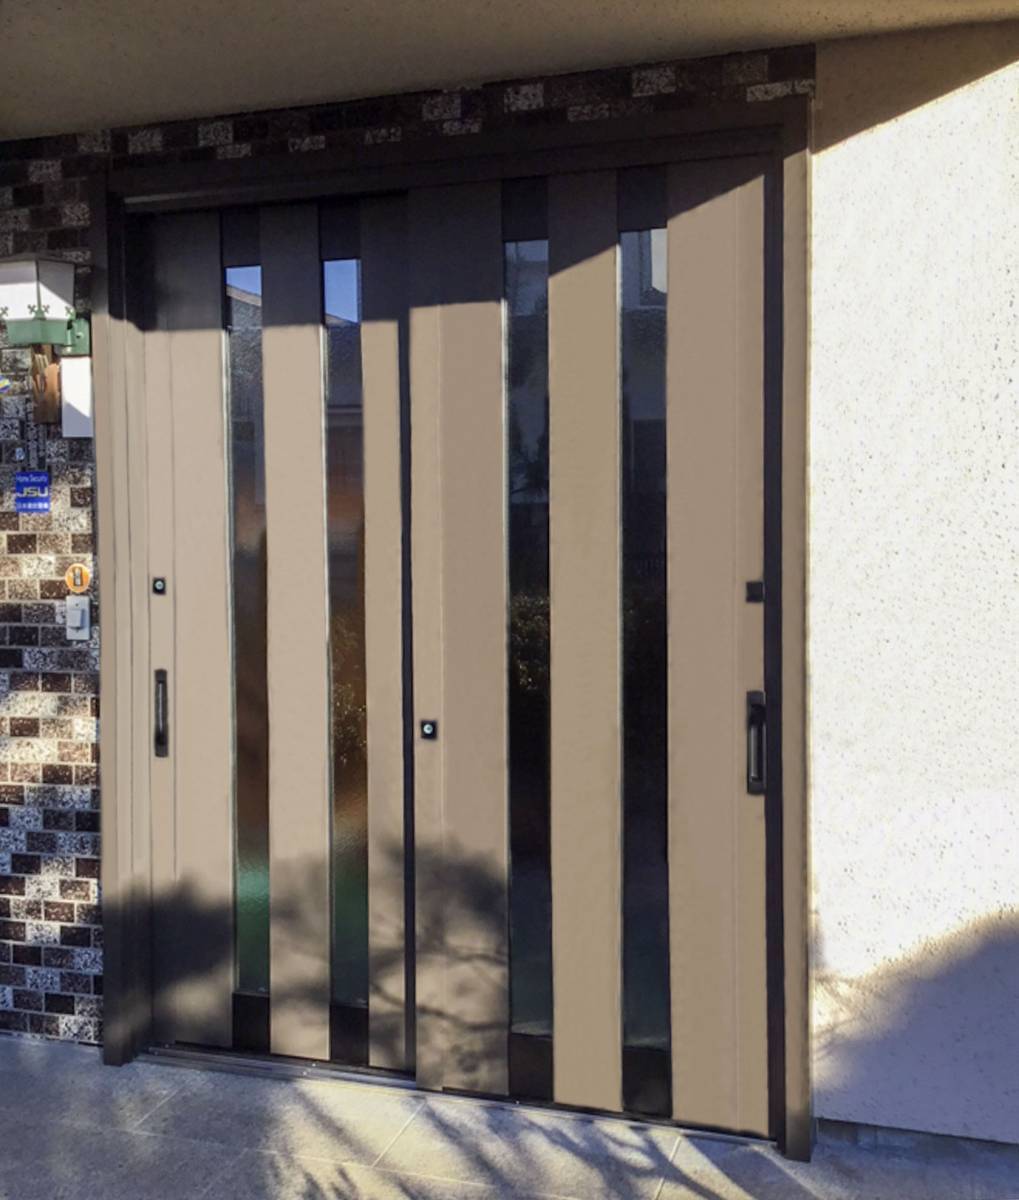 ネットアスのアルミ製の玄関引戸を断熱玄関引戸にリニューアルの施工後の写真1